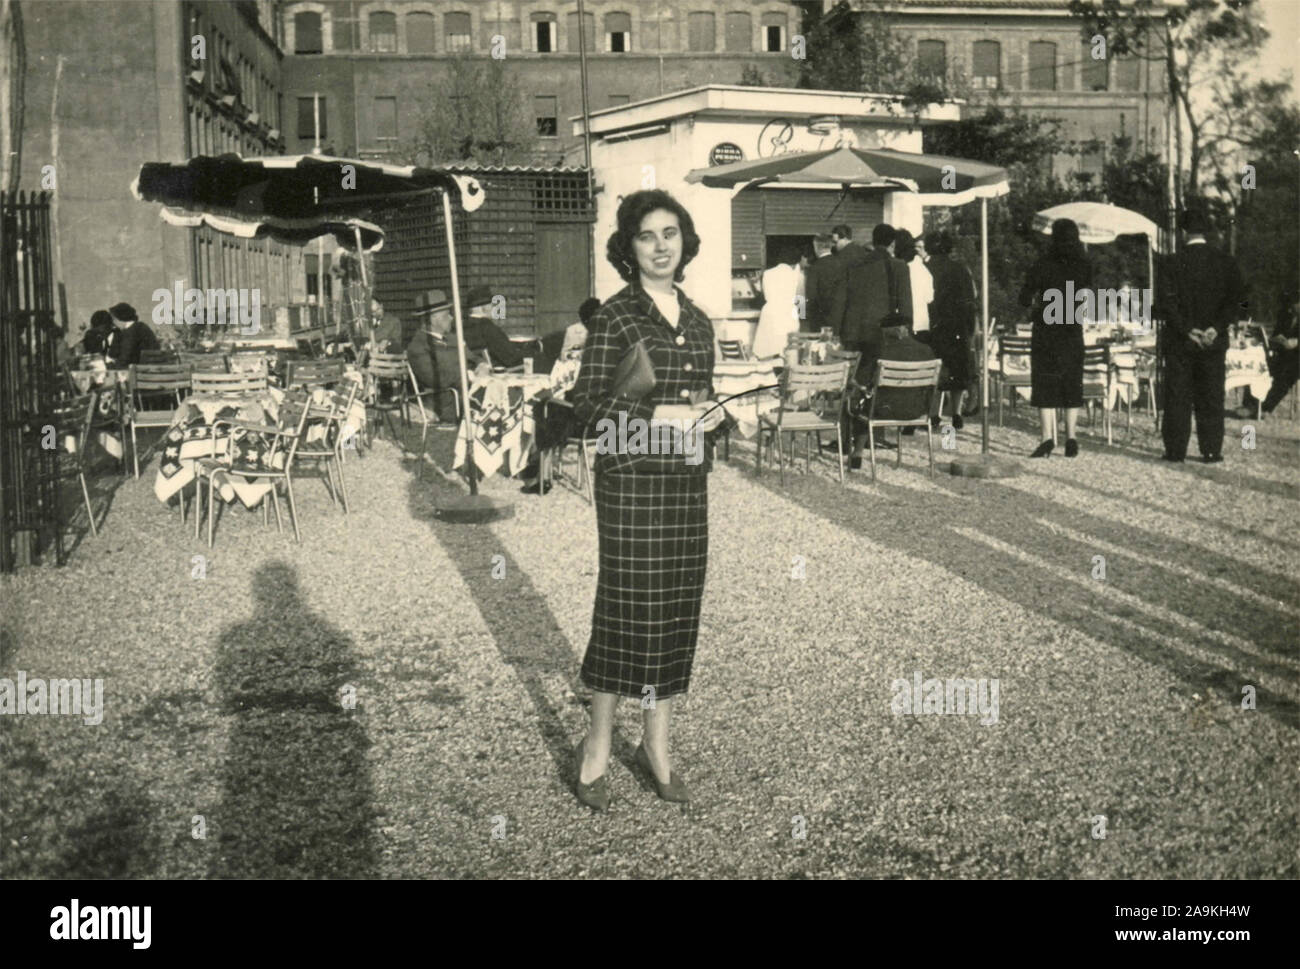 Une femme parmi les tables d'un café en plein air, Italie Banque D'Images